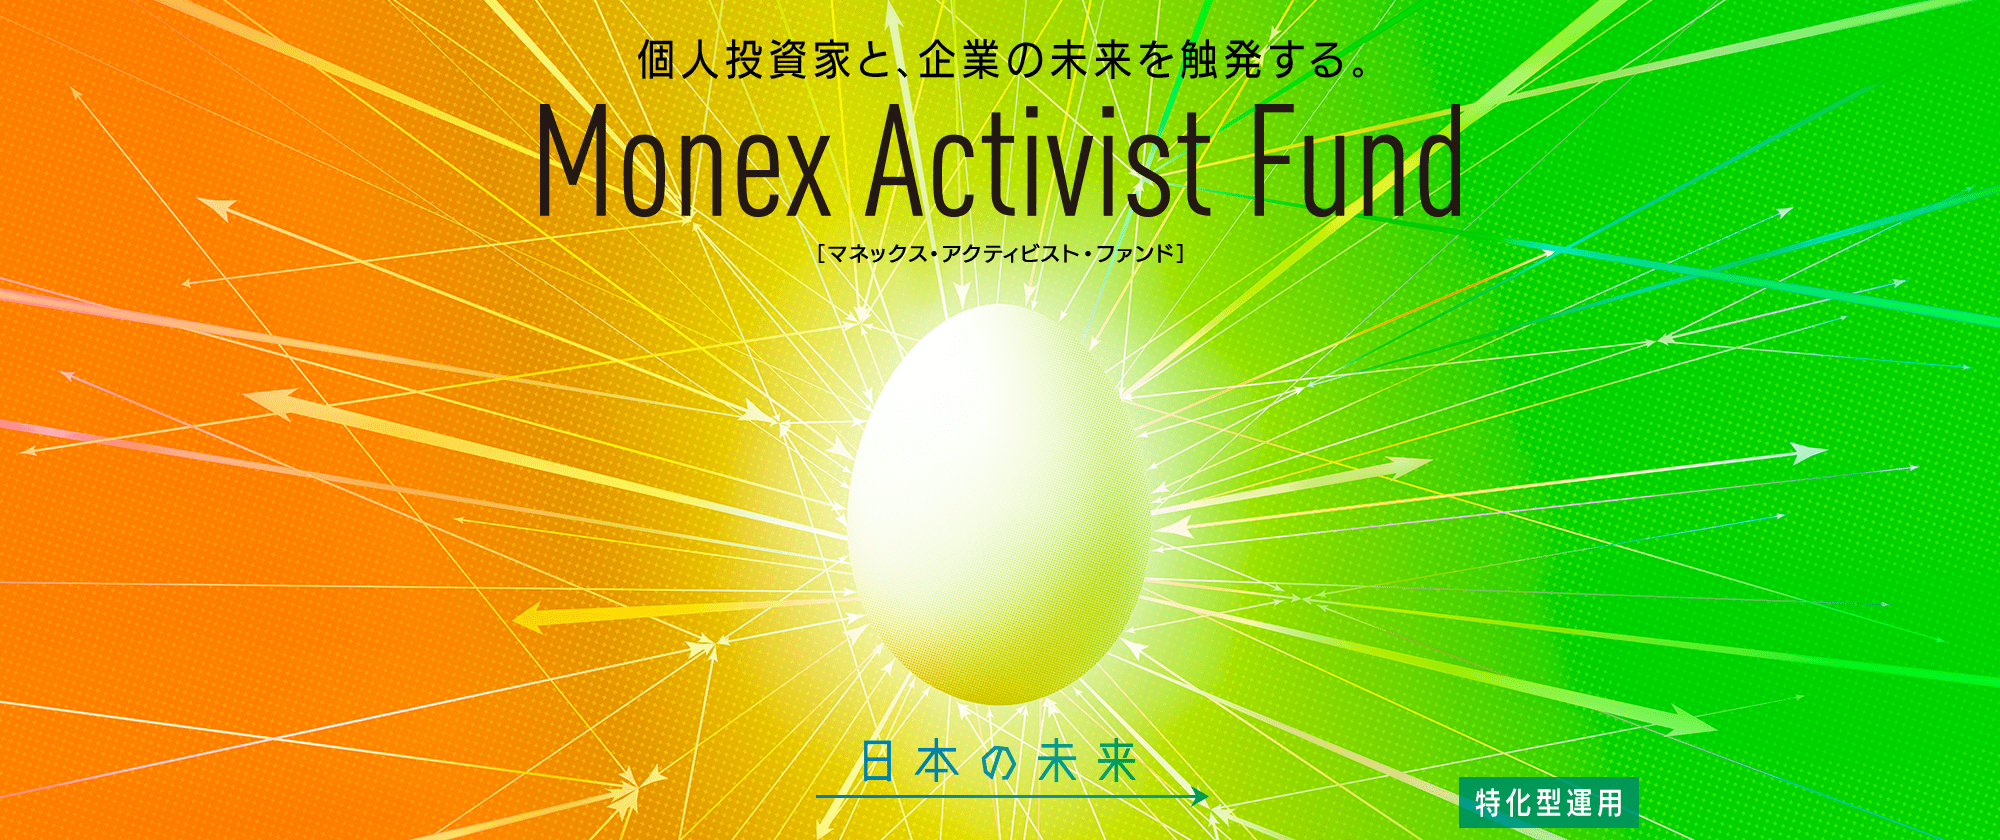 個人投資家と、企業の未来を触発する。 Monex Activist Fund ［マネックス・アクティビスト・ファンド］